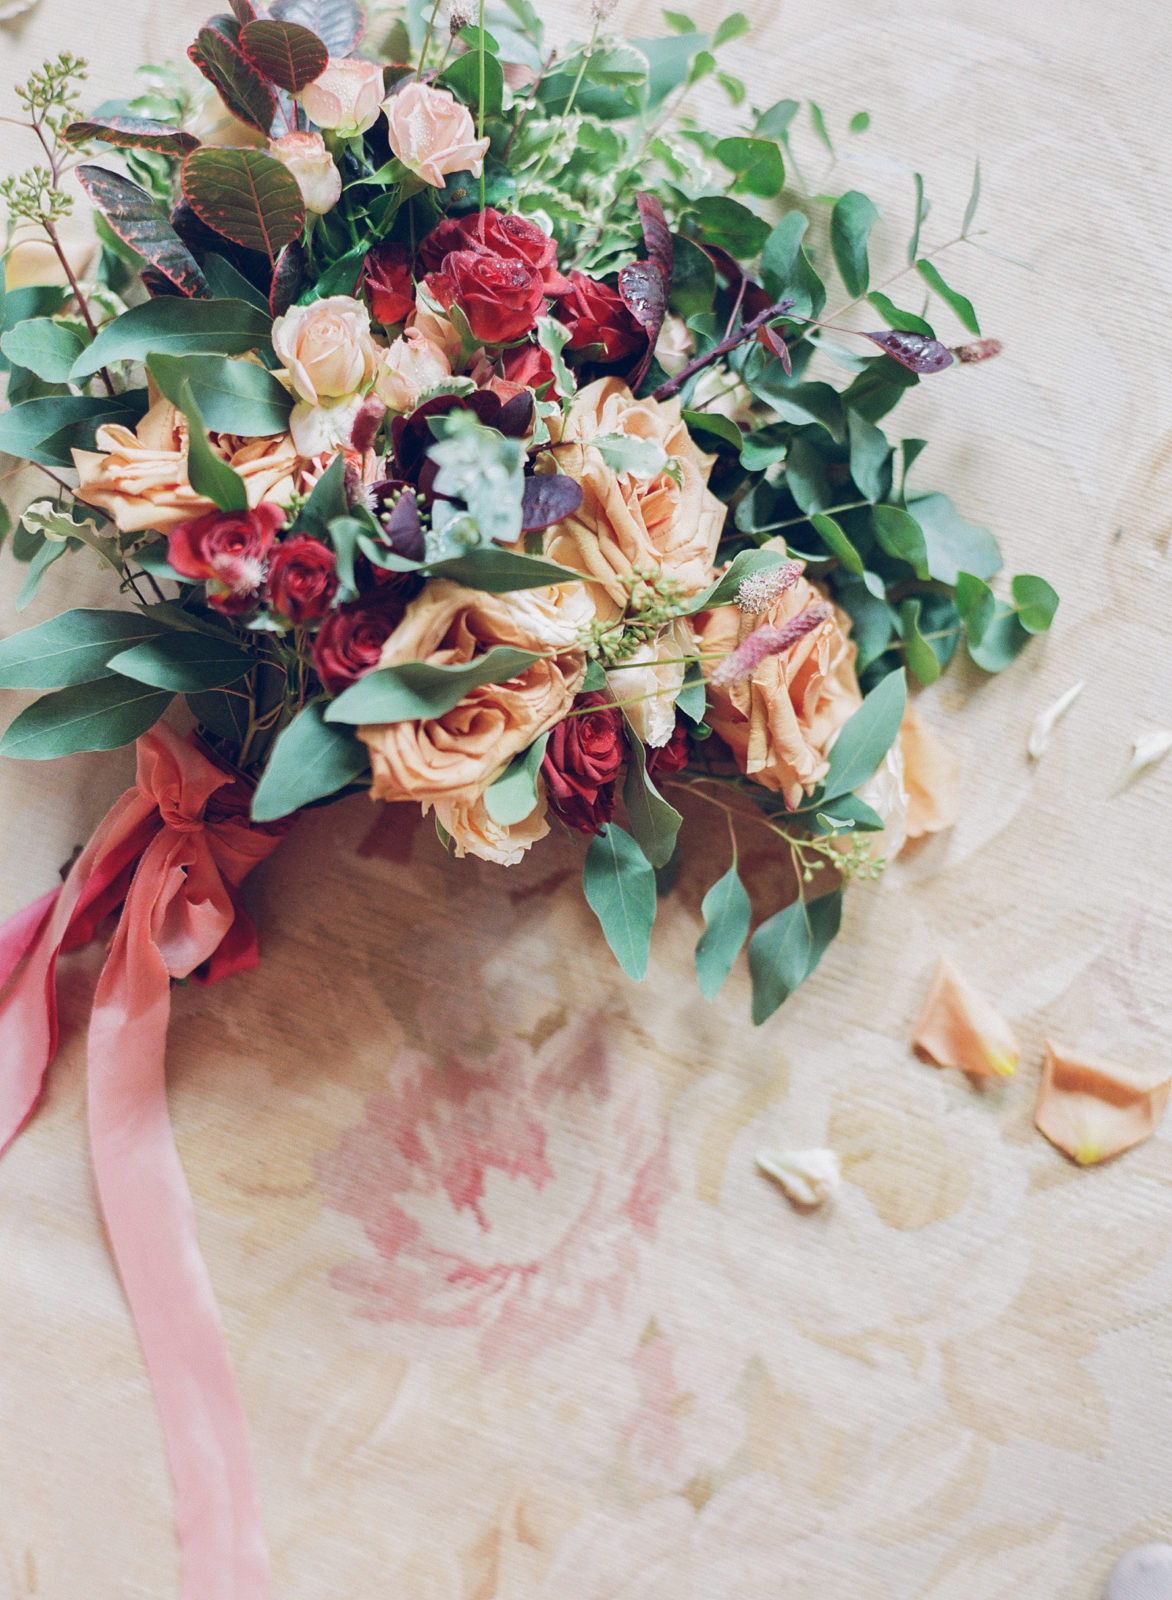 Best Wedding Bouquets of 2018 | Fine Art Wedding Photography | Film Wedding Photography | Molly Carr Photography | English Countryside Wedding | Fall Bridal Bouquet 